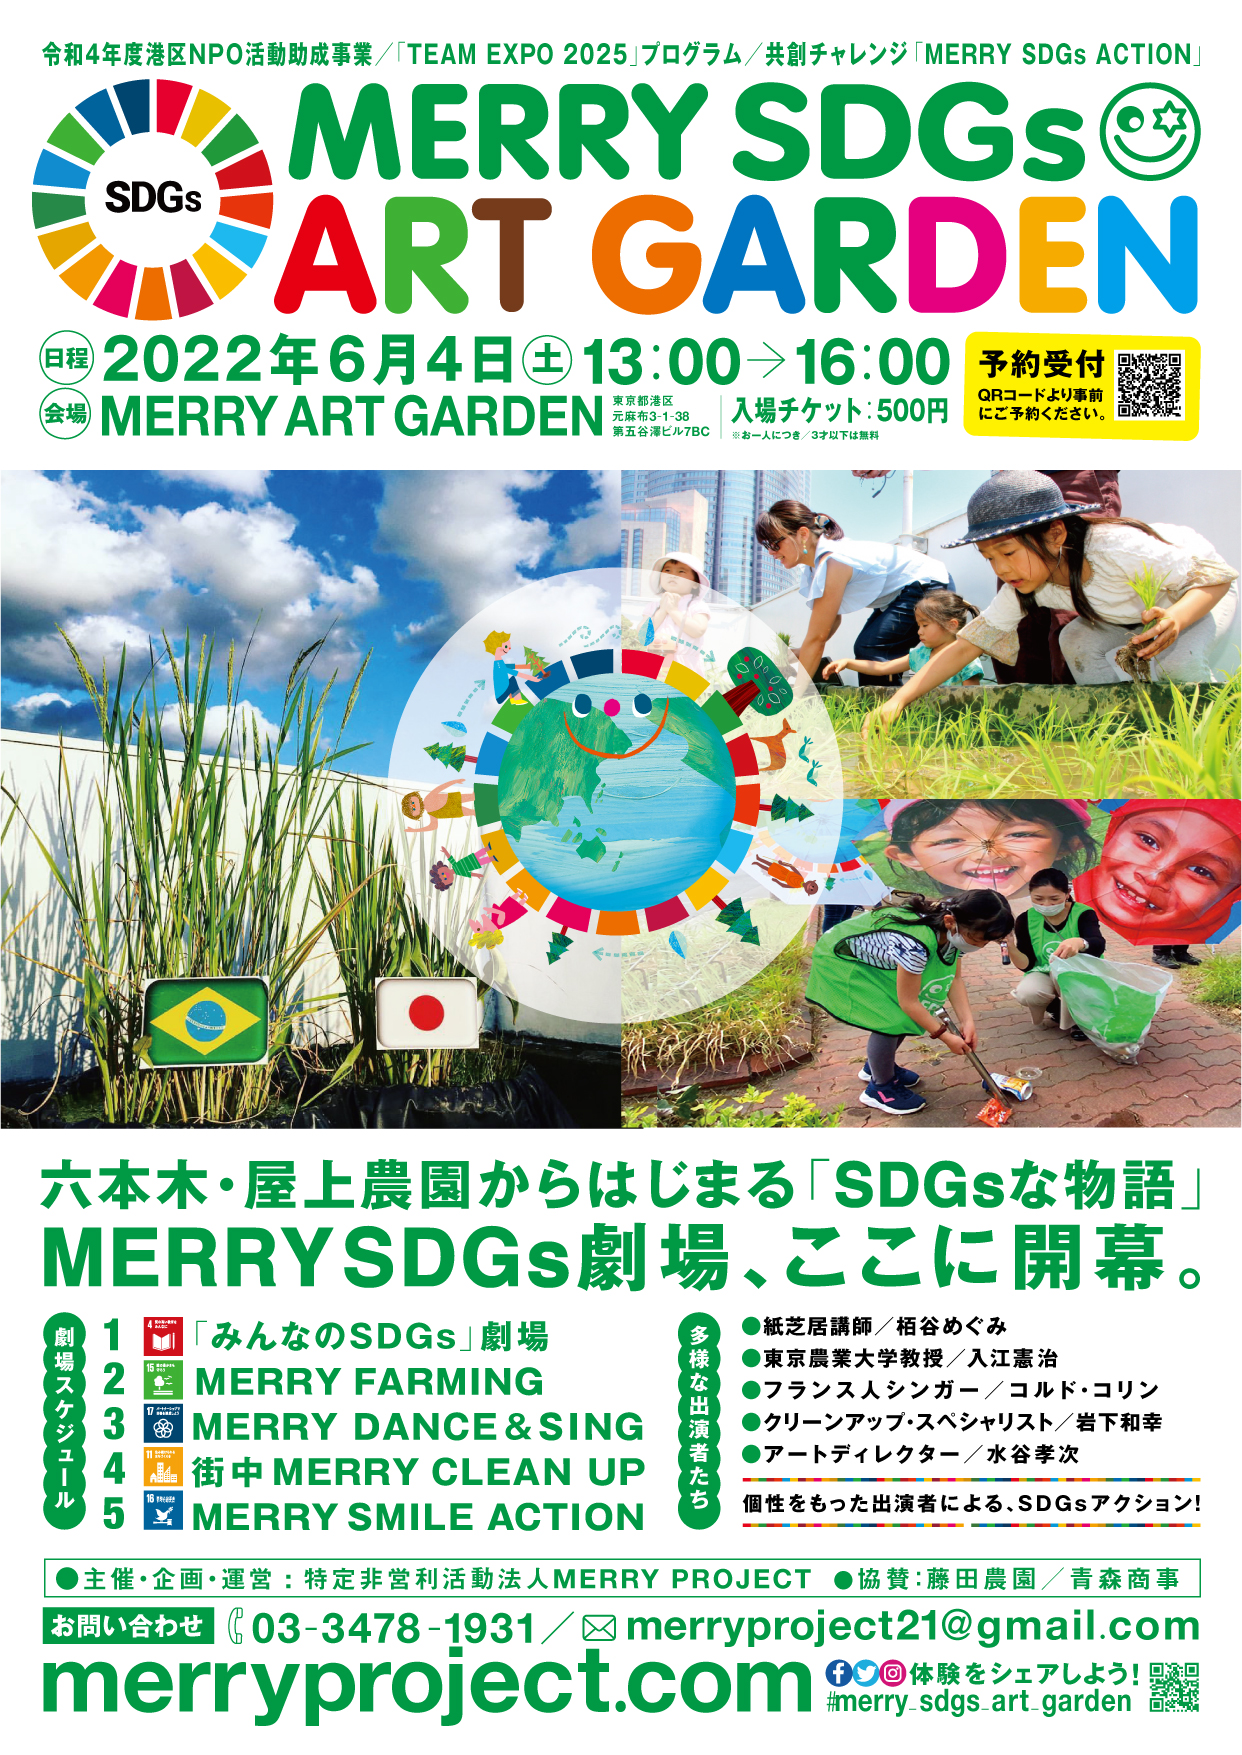 6月4日開幕.SDGs劇場「MERRY SDGs ART GARDEN 」 | MERRY PROJECT